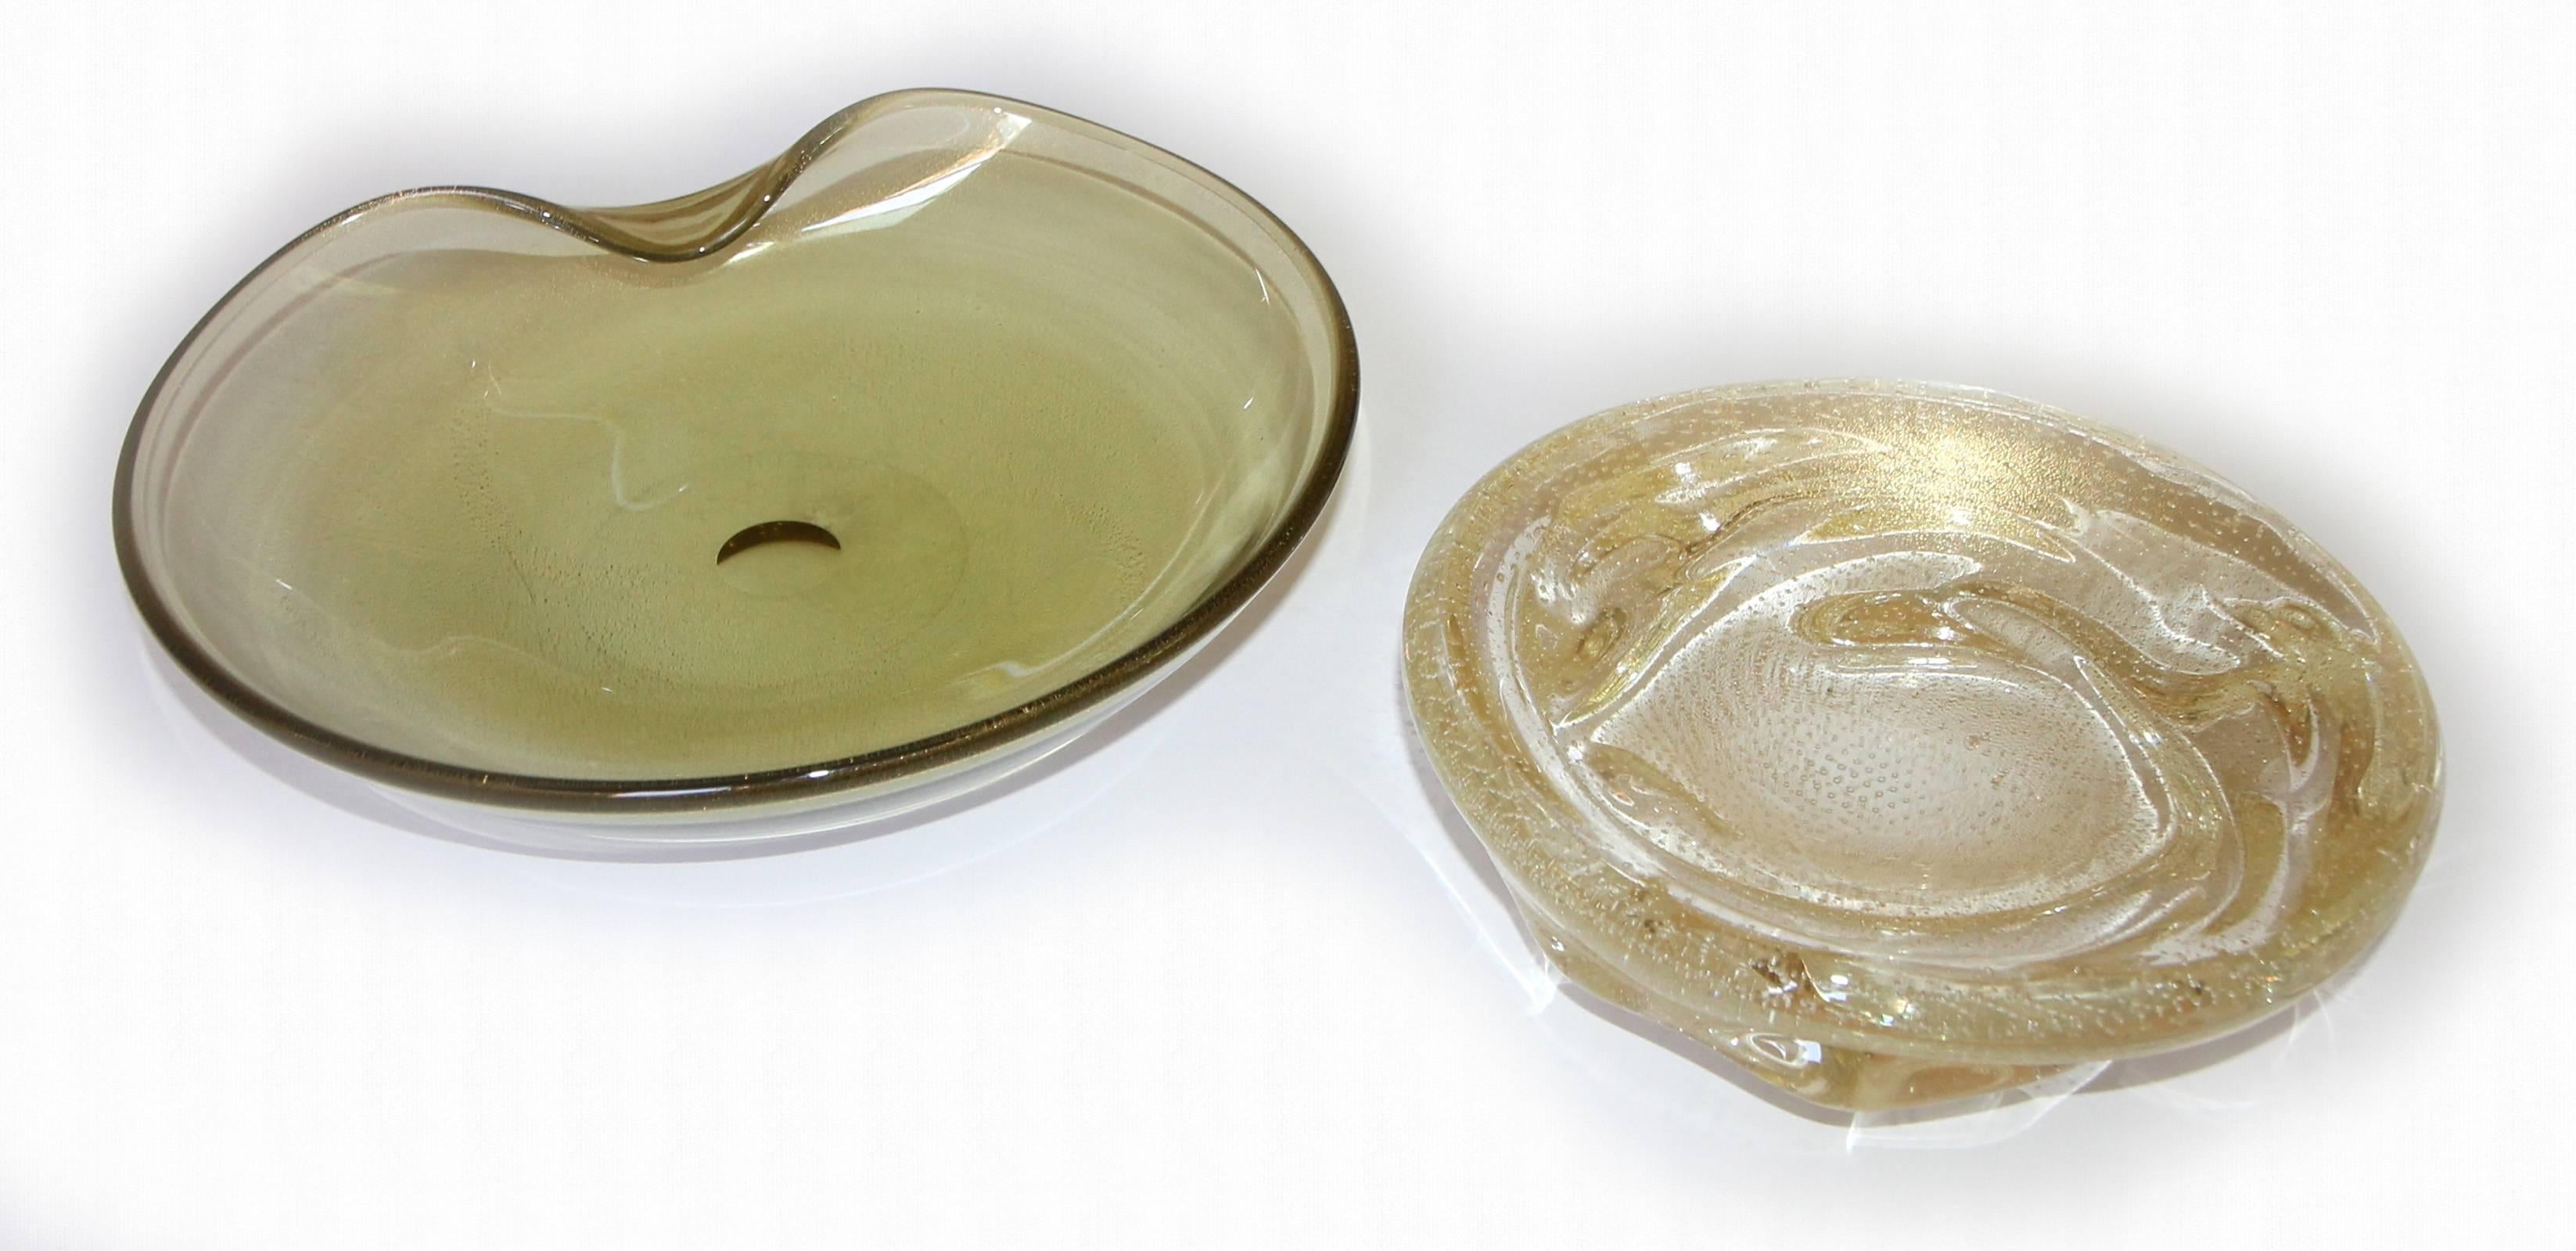 Deux grands bols en verre soufflé à la main de Murano. Un bol en forme de palourde avec des inclusions d'or et une teinte jaune/olive mesure : 10